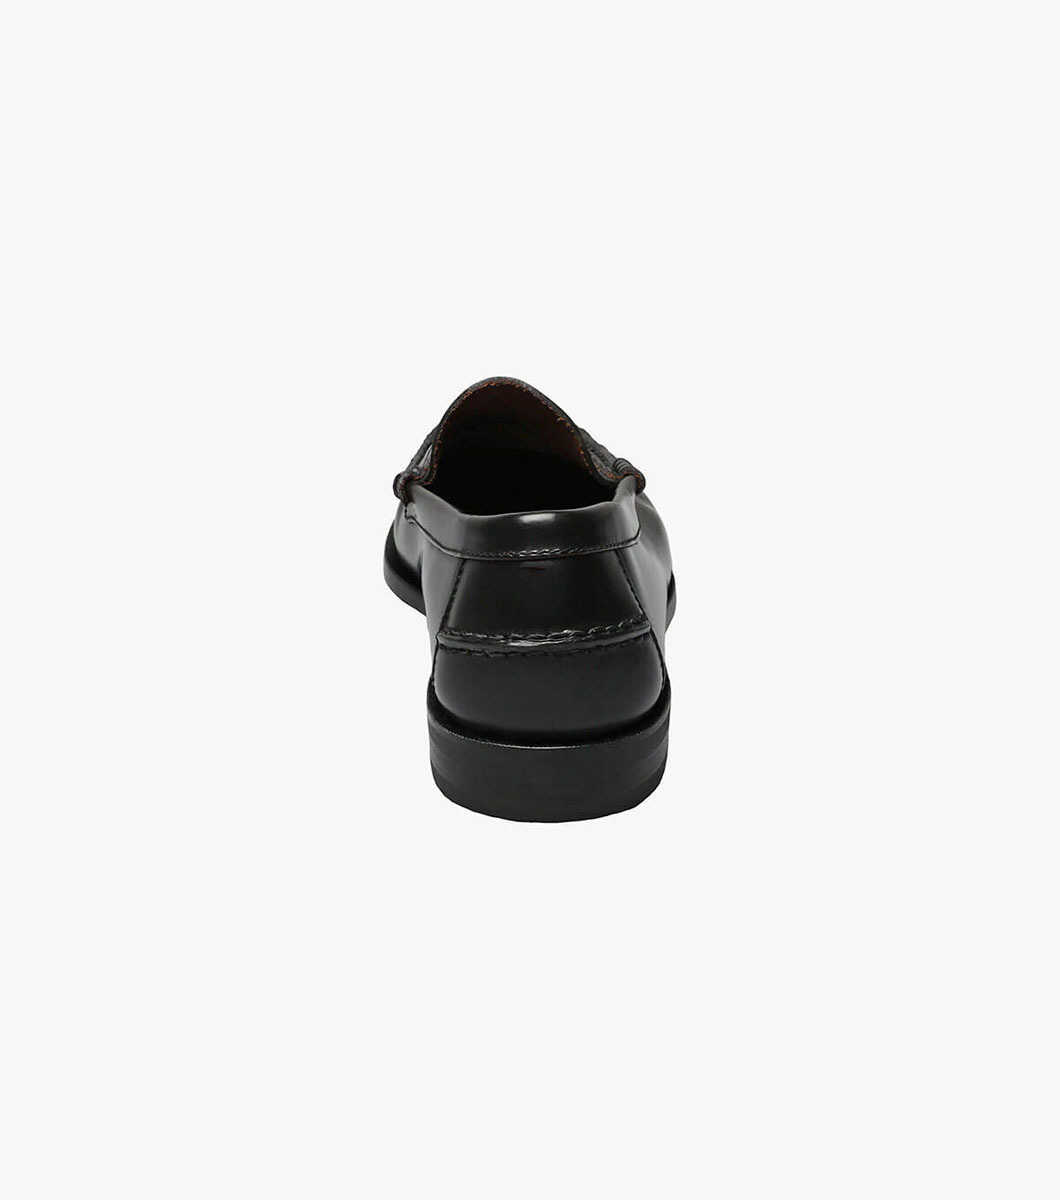 Florsheim Men's Berkley Moc Toe Penny Loafer Shoes Black 17058-01 